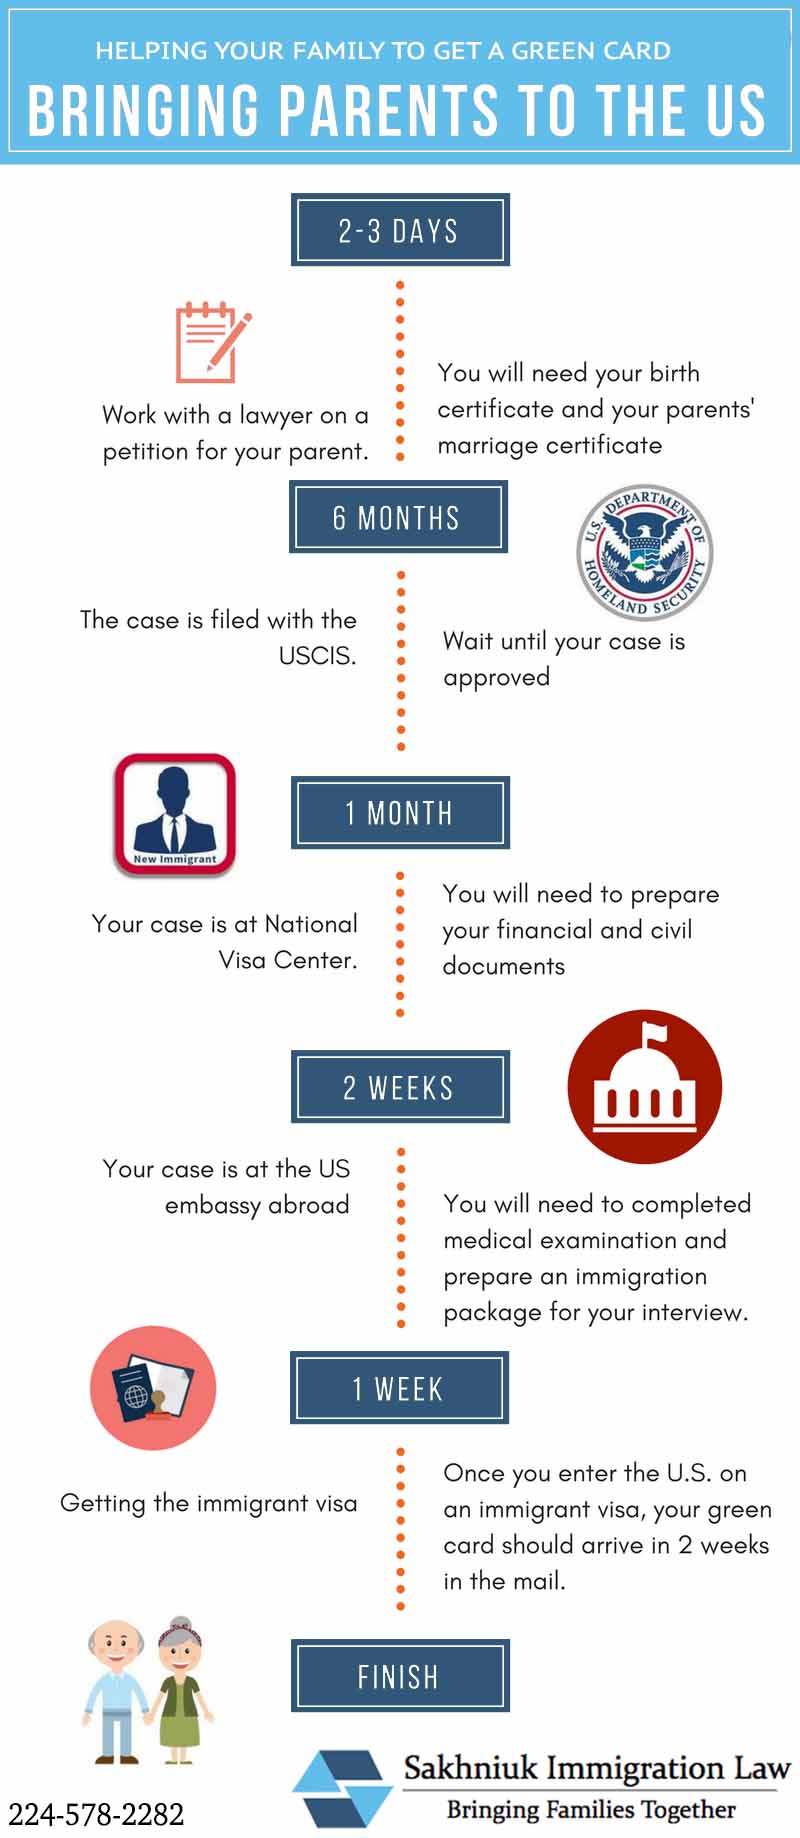 Timeline do meu Green Card: saiba tudo sobre meu processo imigratório